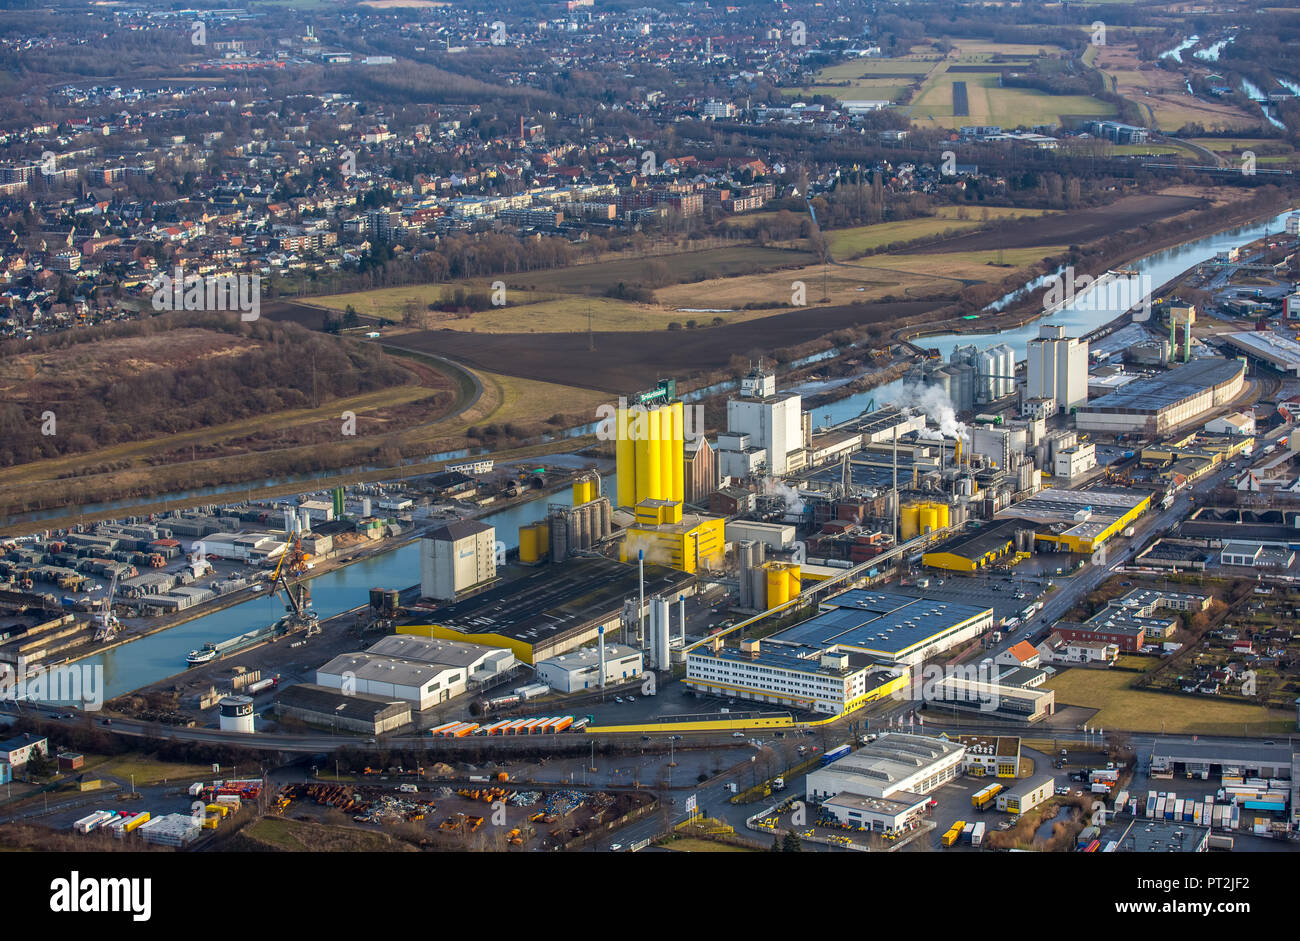 Port de Hamm, moulin à huile, l'huile alimentaire Brökelmann producteur, Hamm, Ruhr, Rhénanie du Nord-Westphalie, Allemagne Banque D'Images